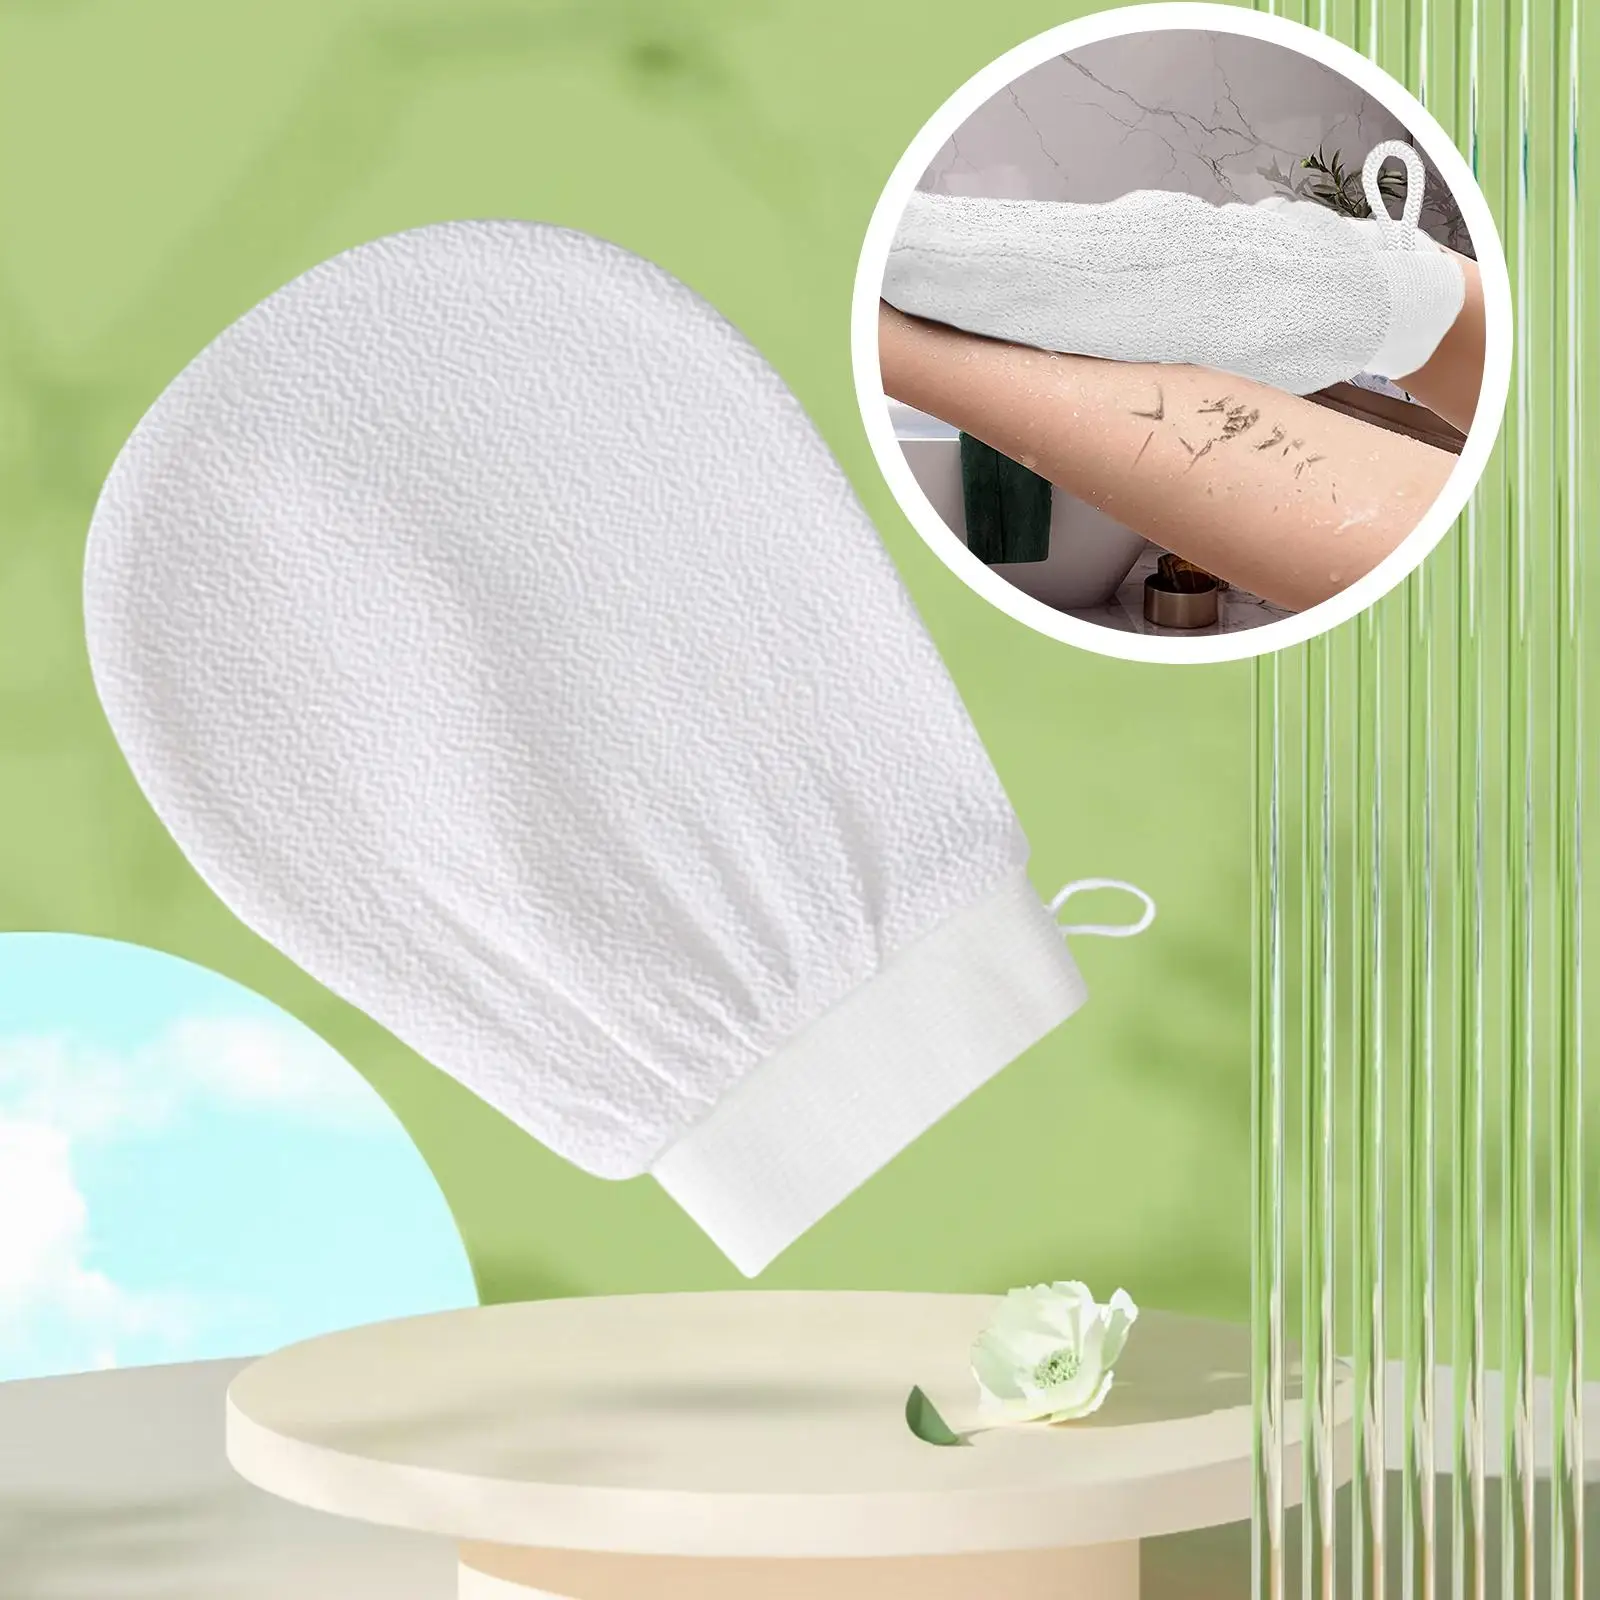 Bath Glove Gentle Body Scrub Scrubber Shower Gloves for Deep Cleansing Bath Shower Hand